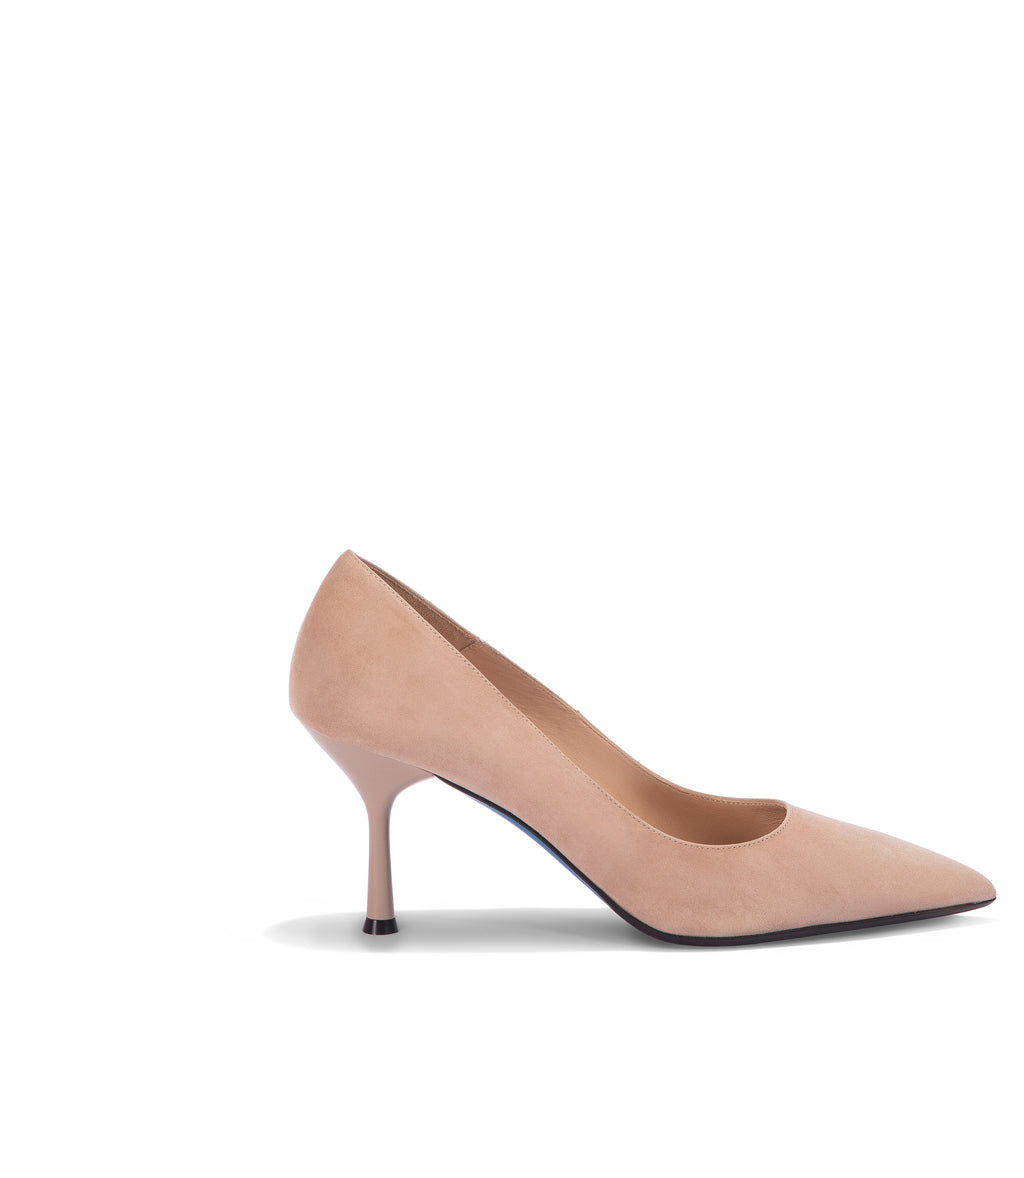 Glamorous heel pumps in pale blush patent exclusive to ASOS | ASOS